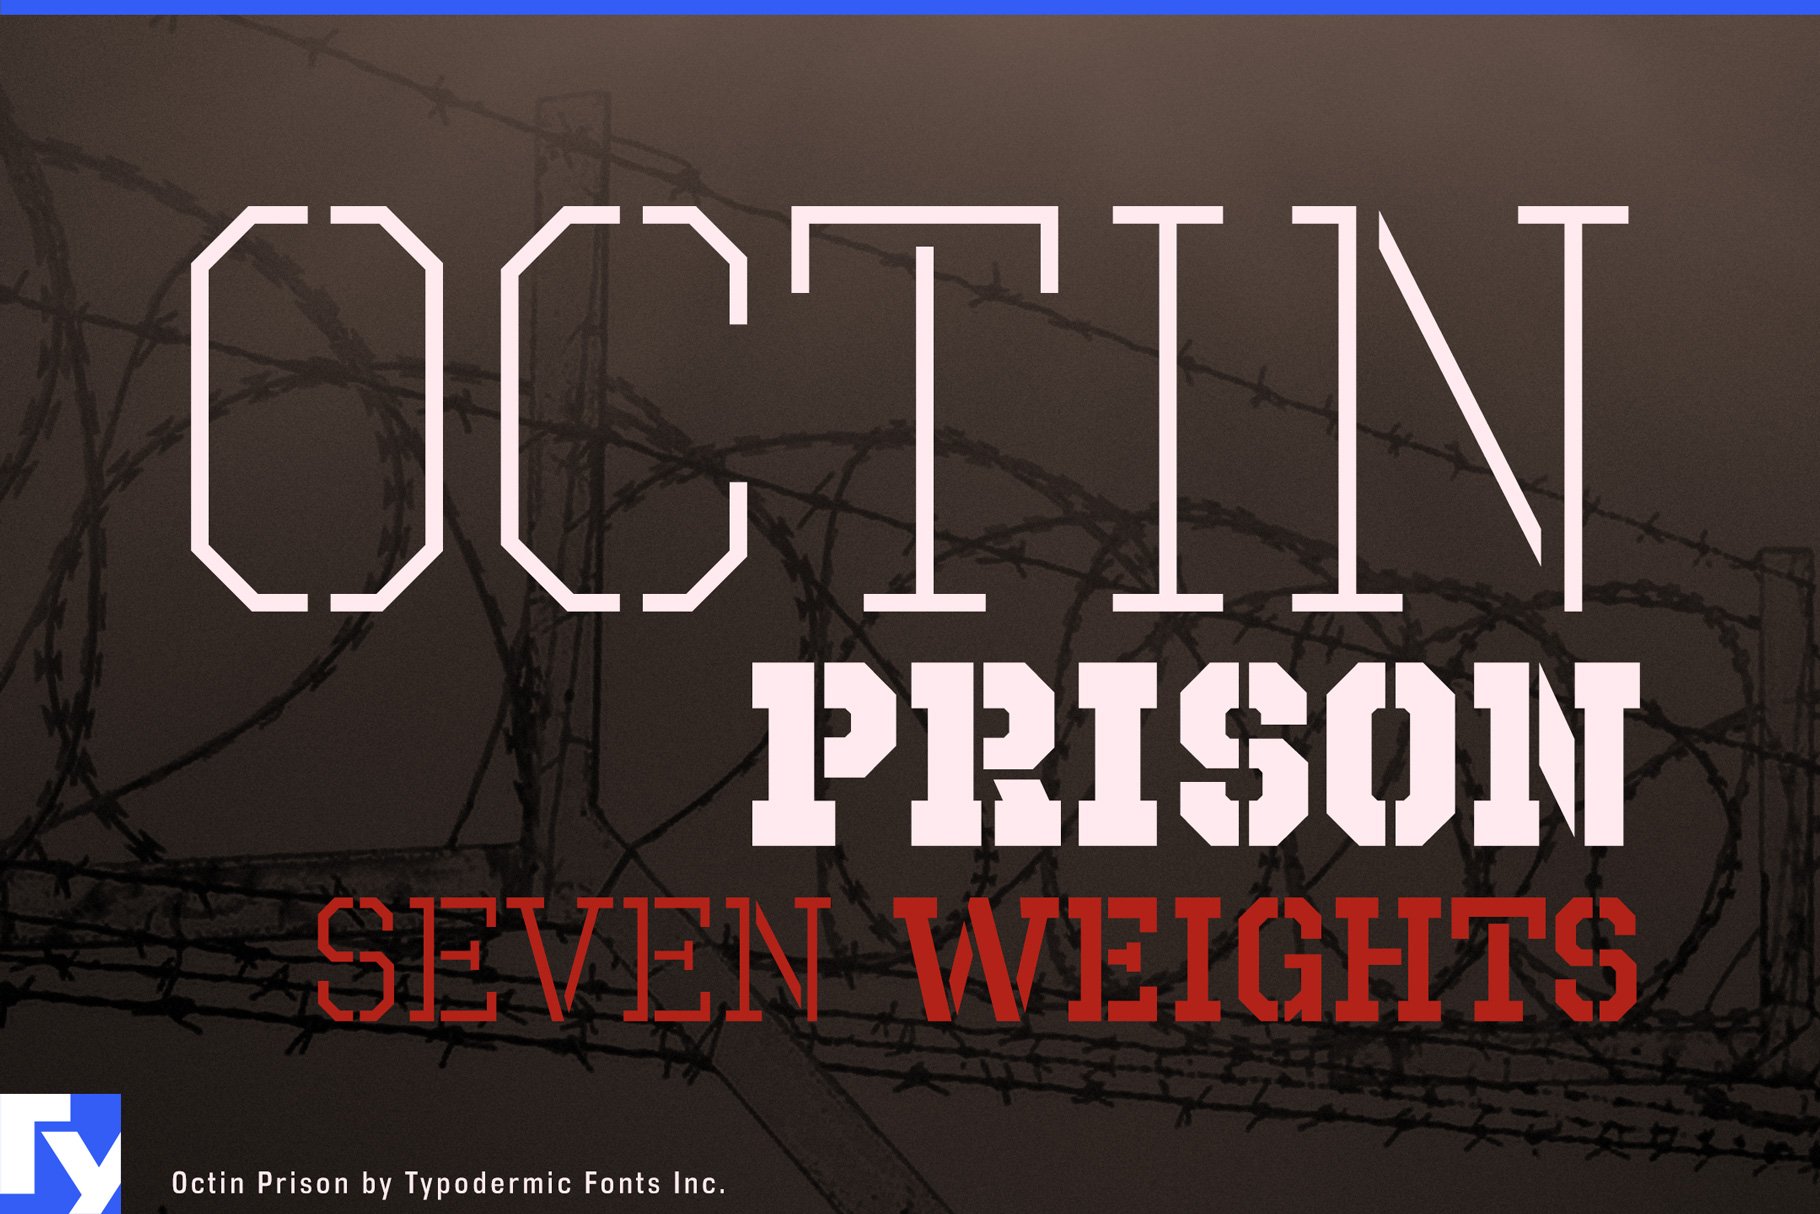 Octin Prison cover image.